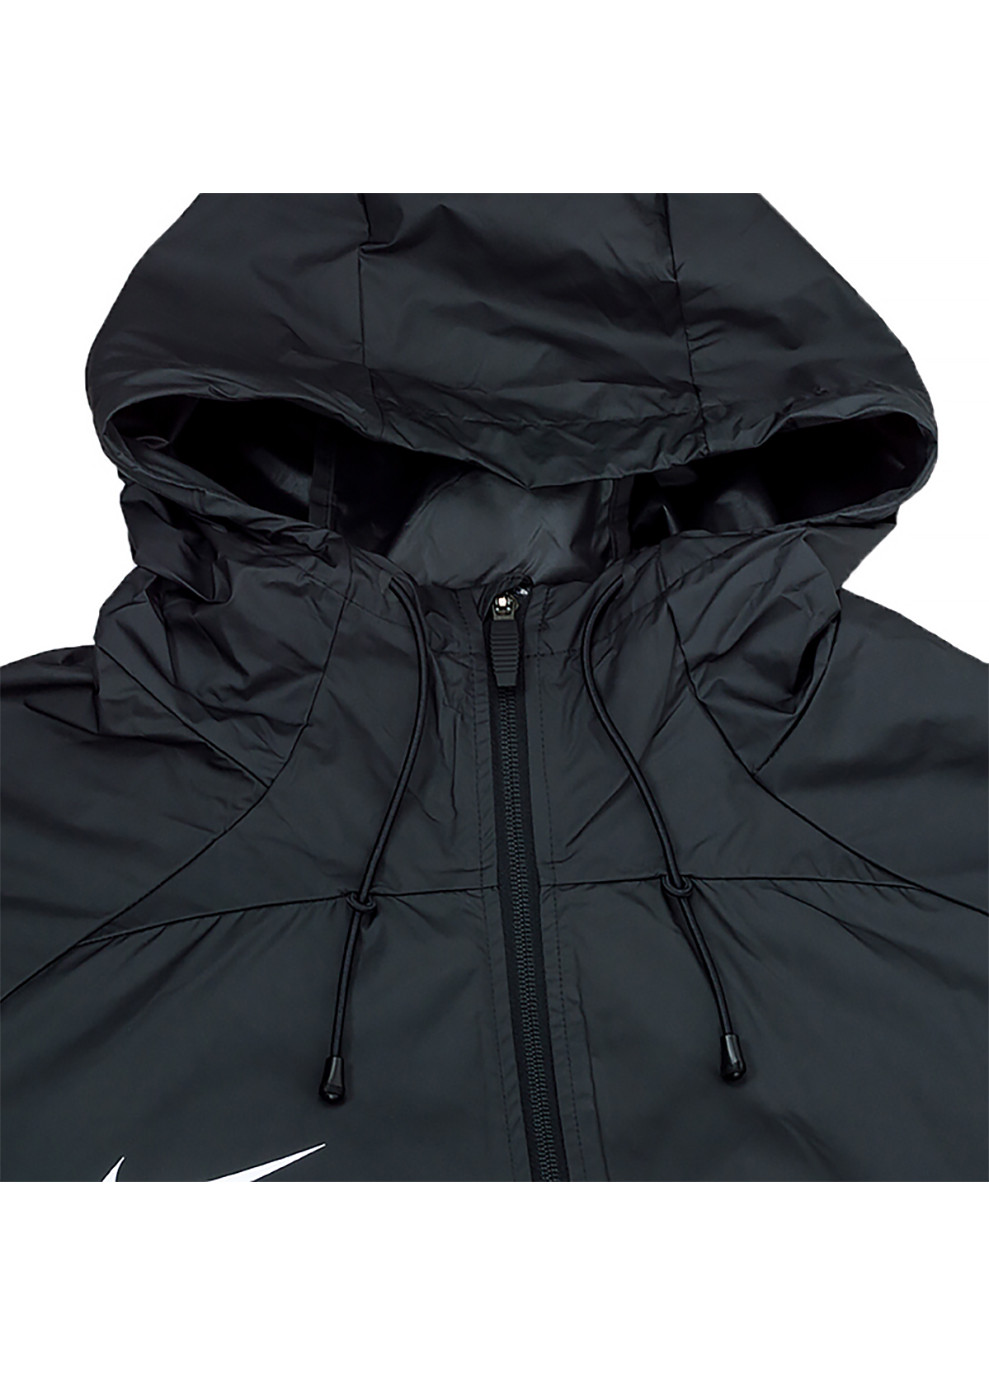 Чорна демісезонна чоловіча куртка m nk sf acdpr hd rain jkt чорний m (dj6301-010 m) Nike